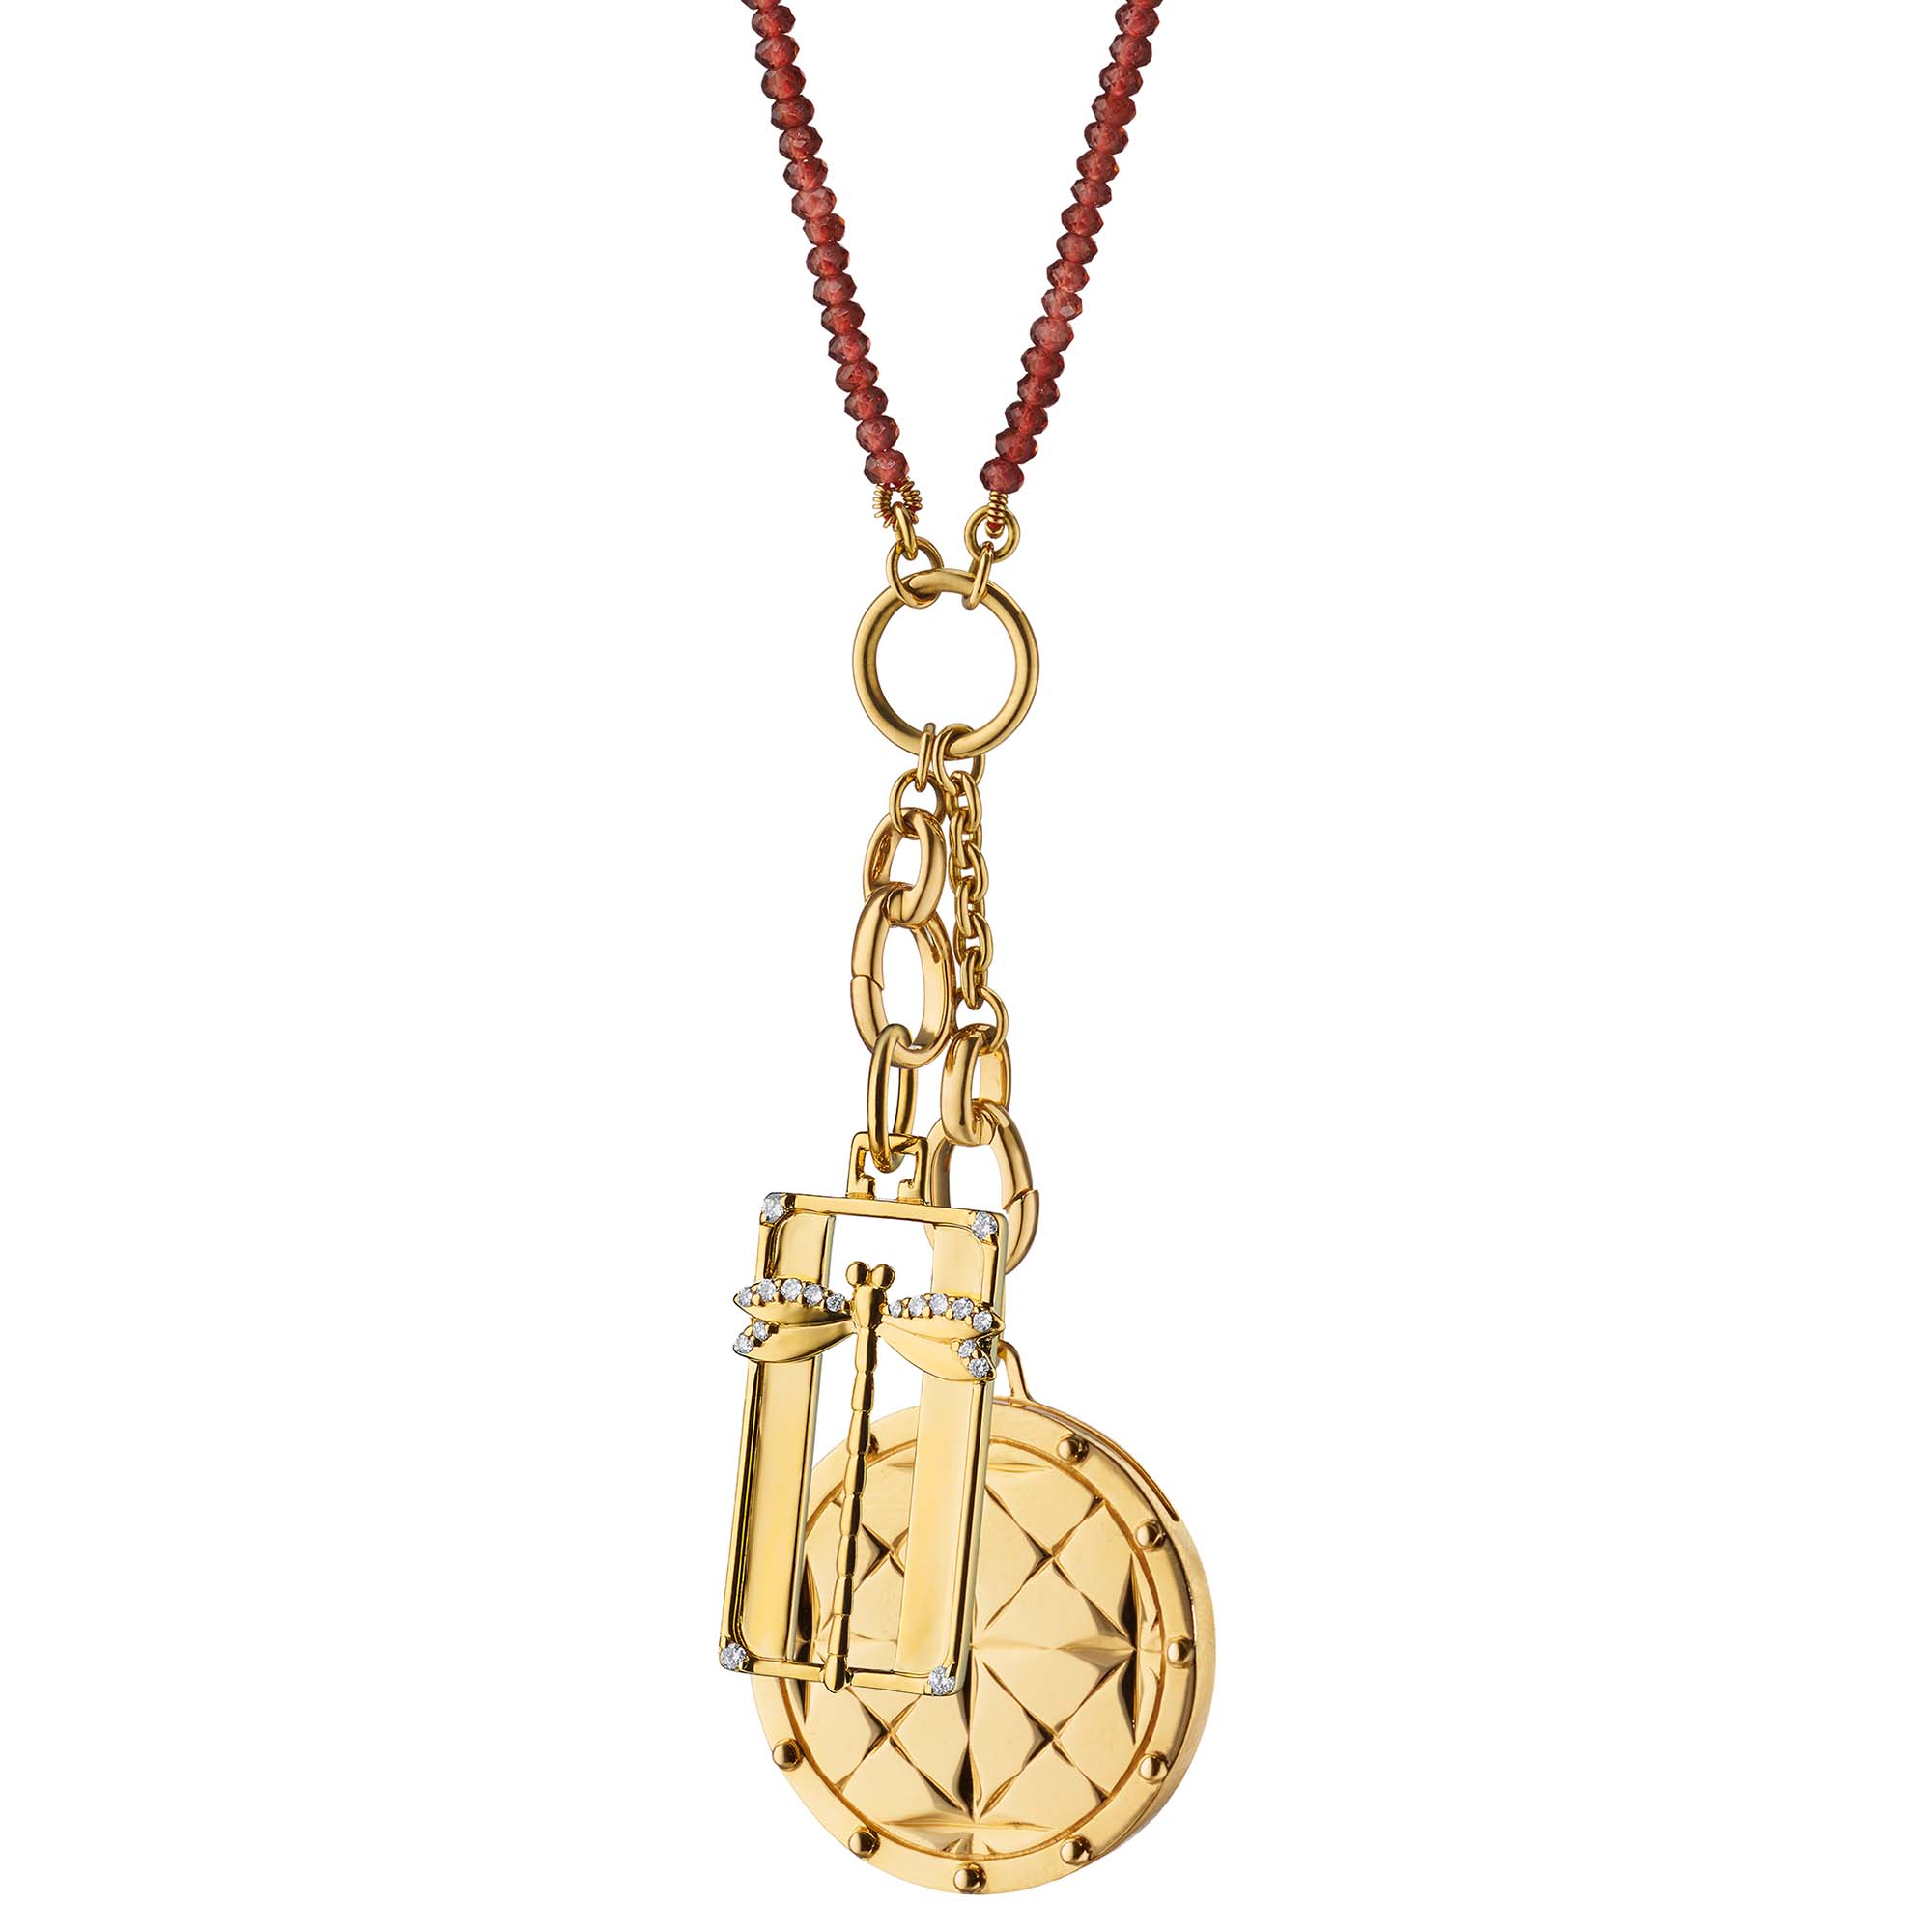 Diamond Heart Locket, 18k White Gold, LV Design, Gift, Neck Mess, Photo  Frame